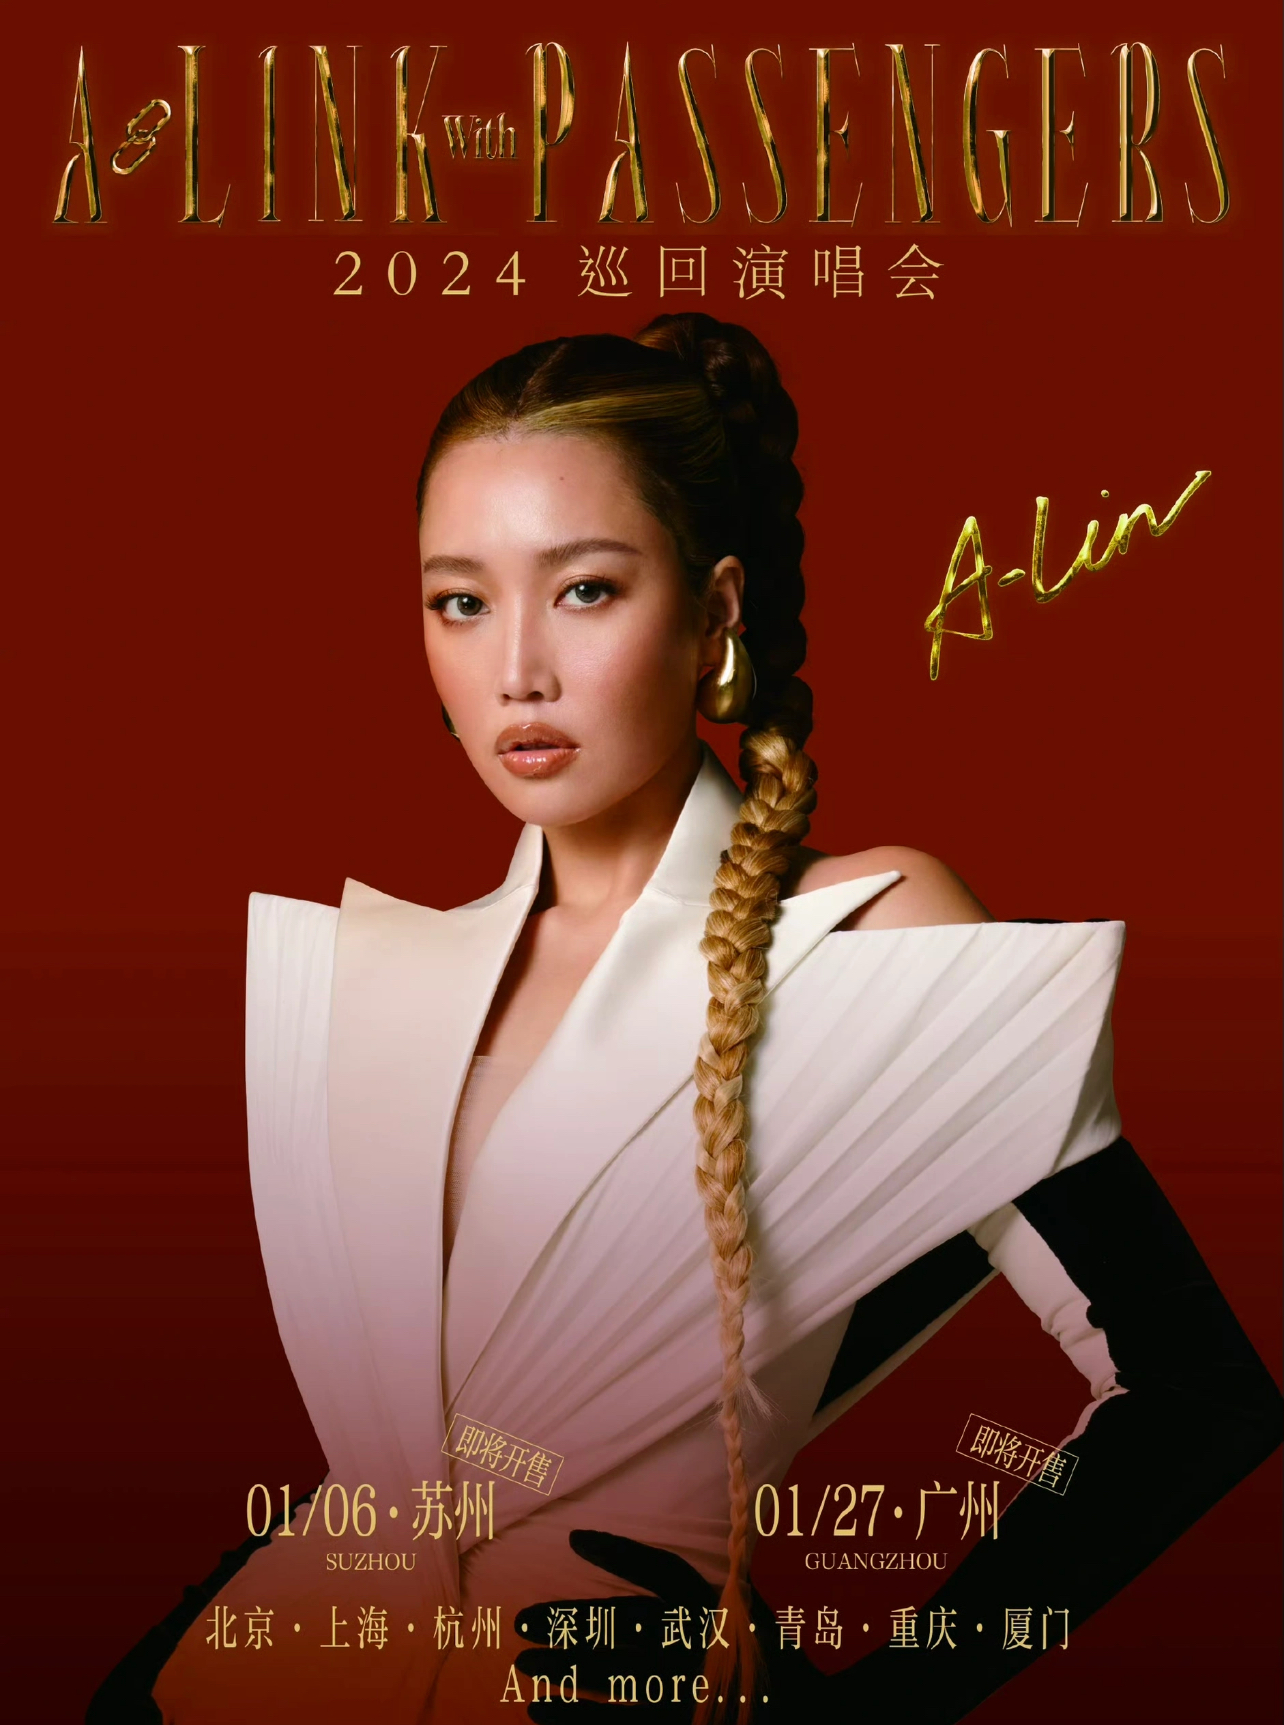 [武汉]2024 黄丽玲A-Lin [A-LINK with PASSENGERS] 演唱会-武汉站